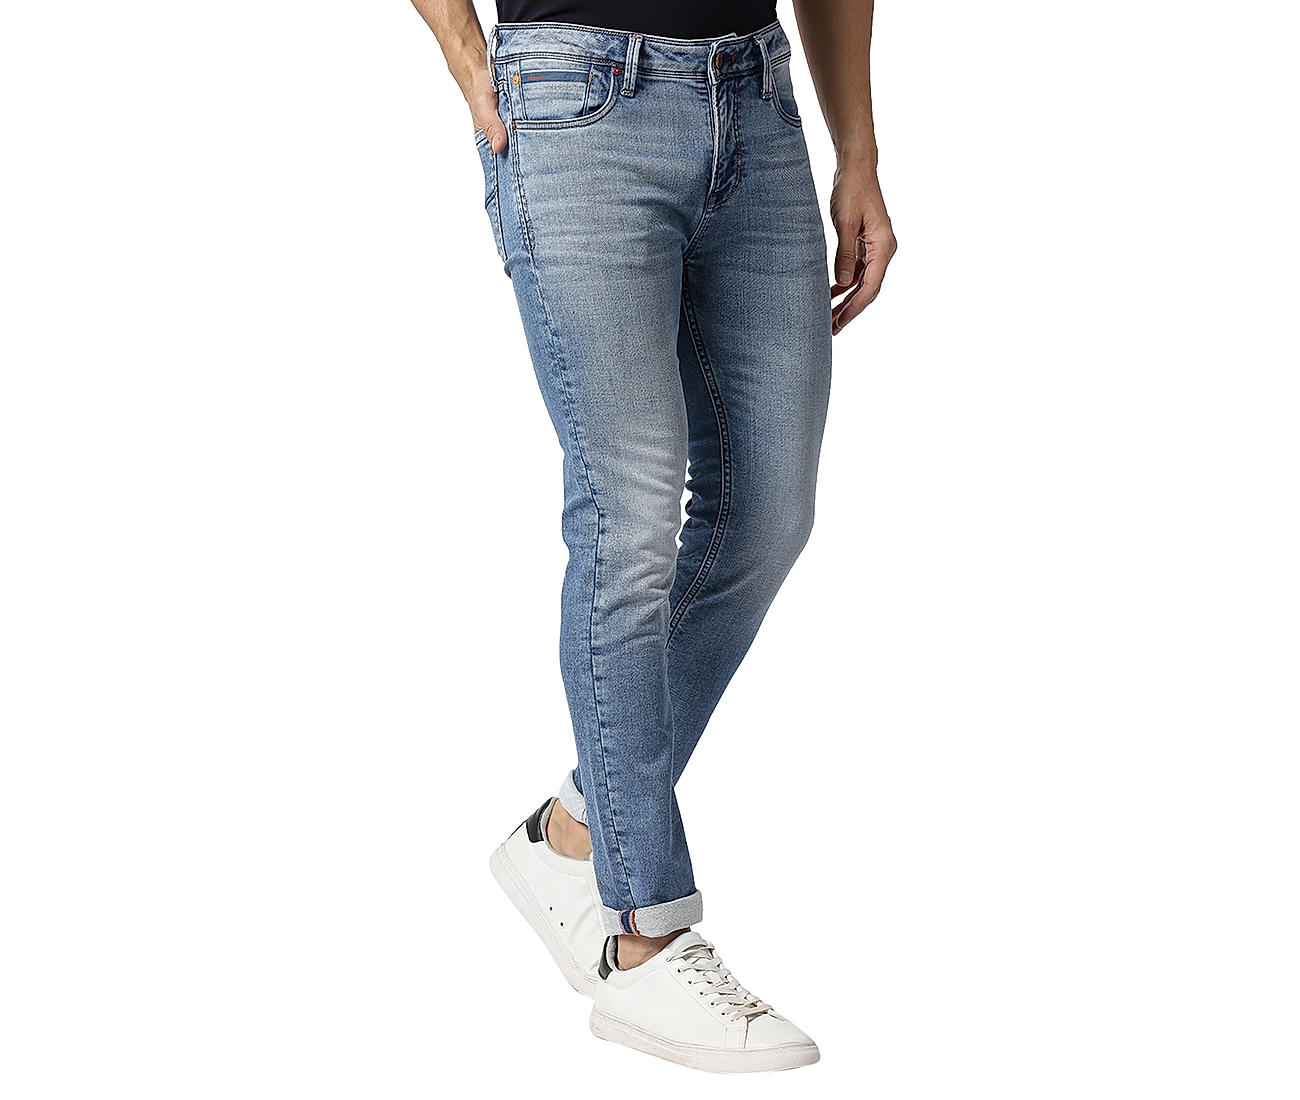 Buy Blue Solid Ankle Fit Jeans for Men Online at Killer Jeans | 504951